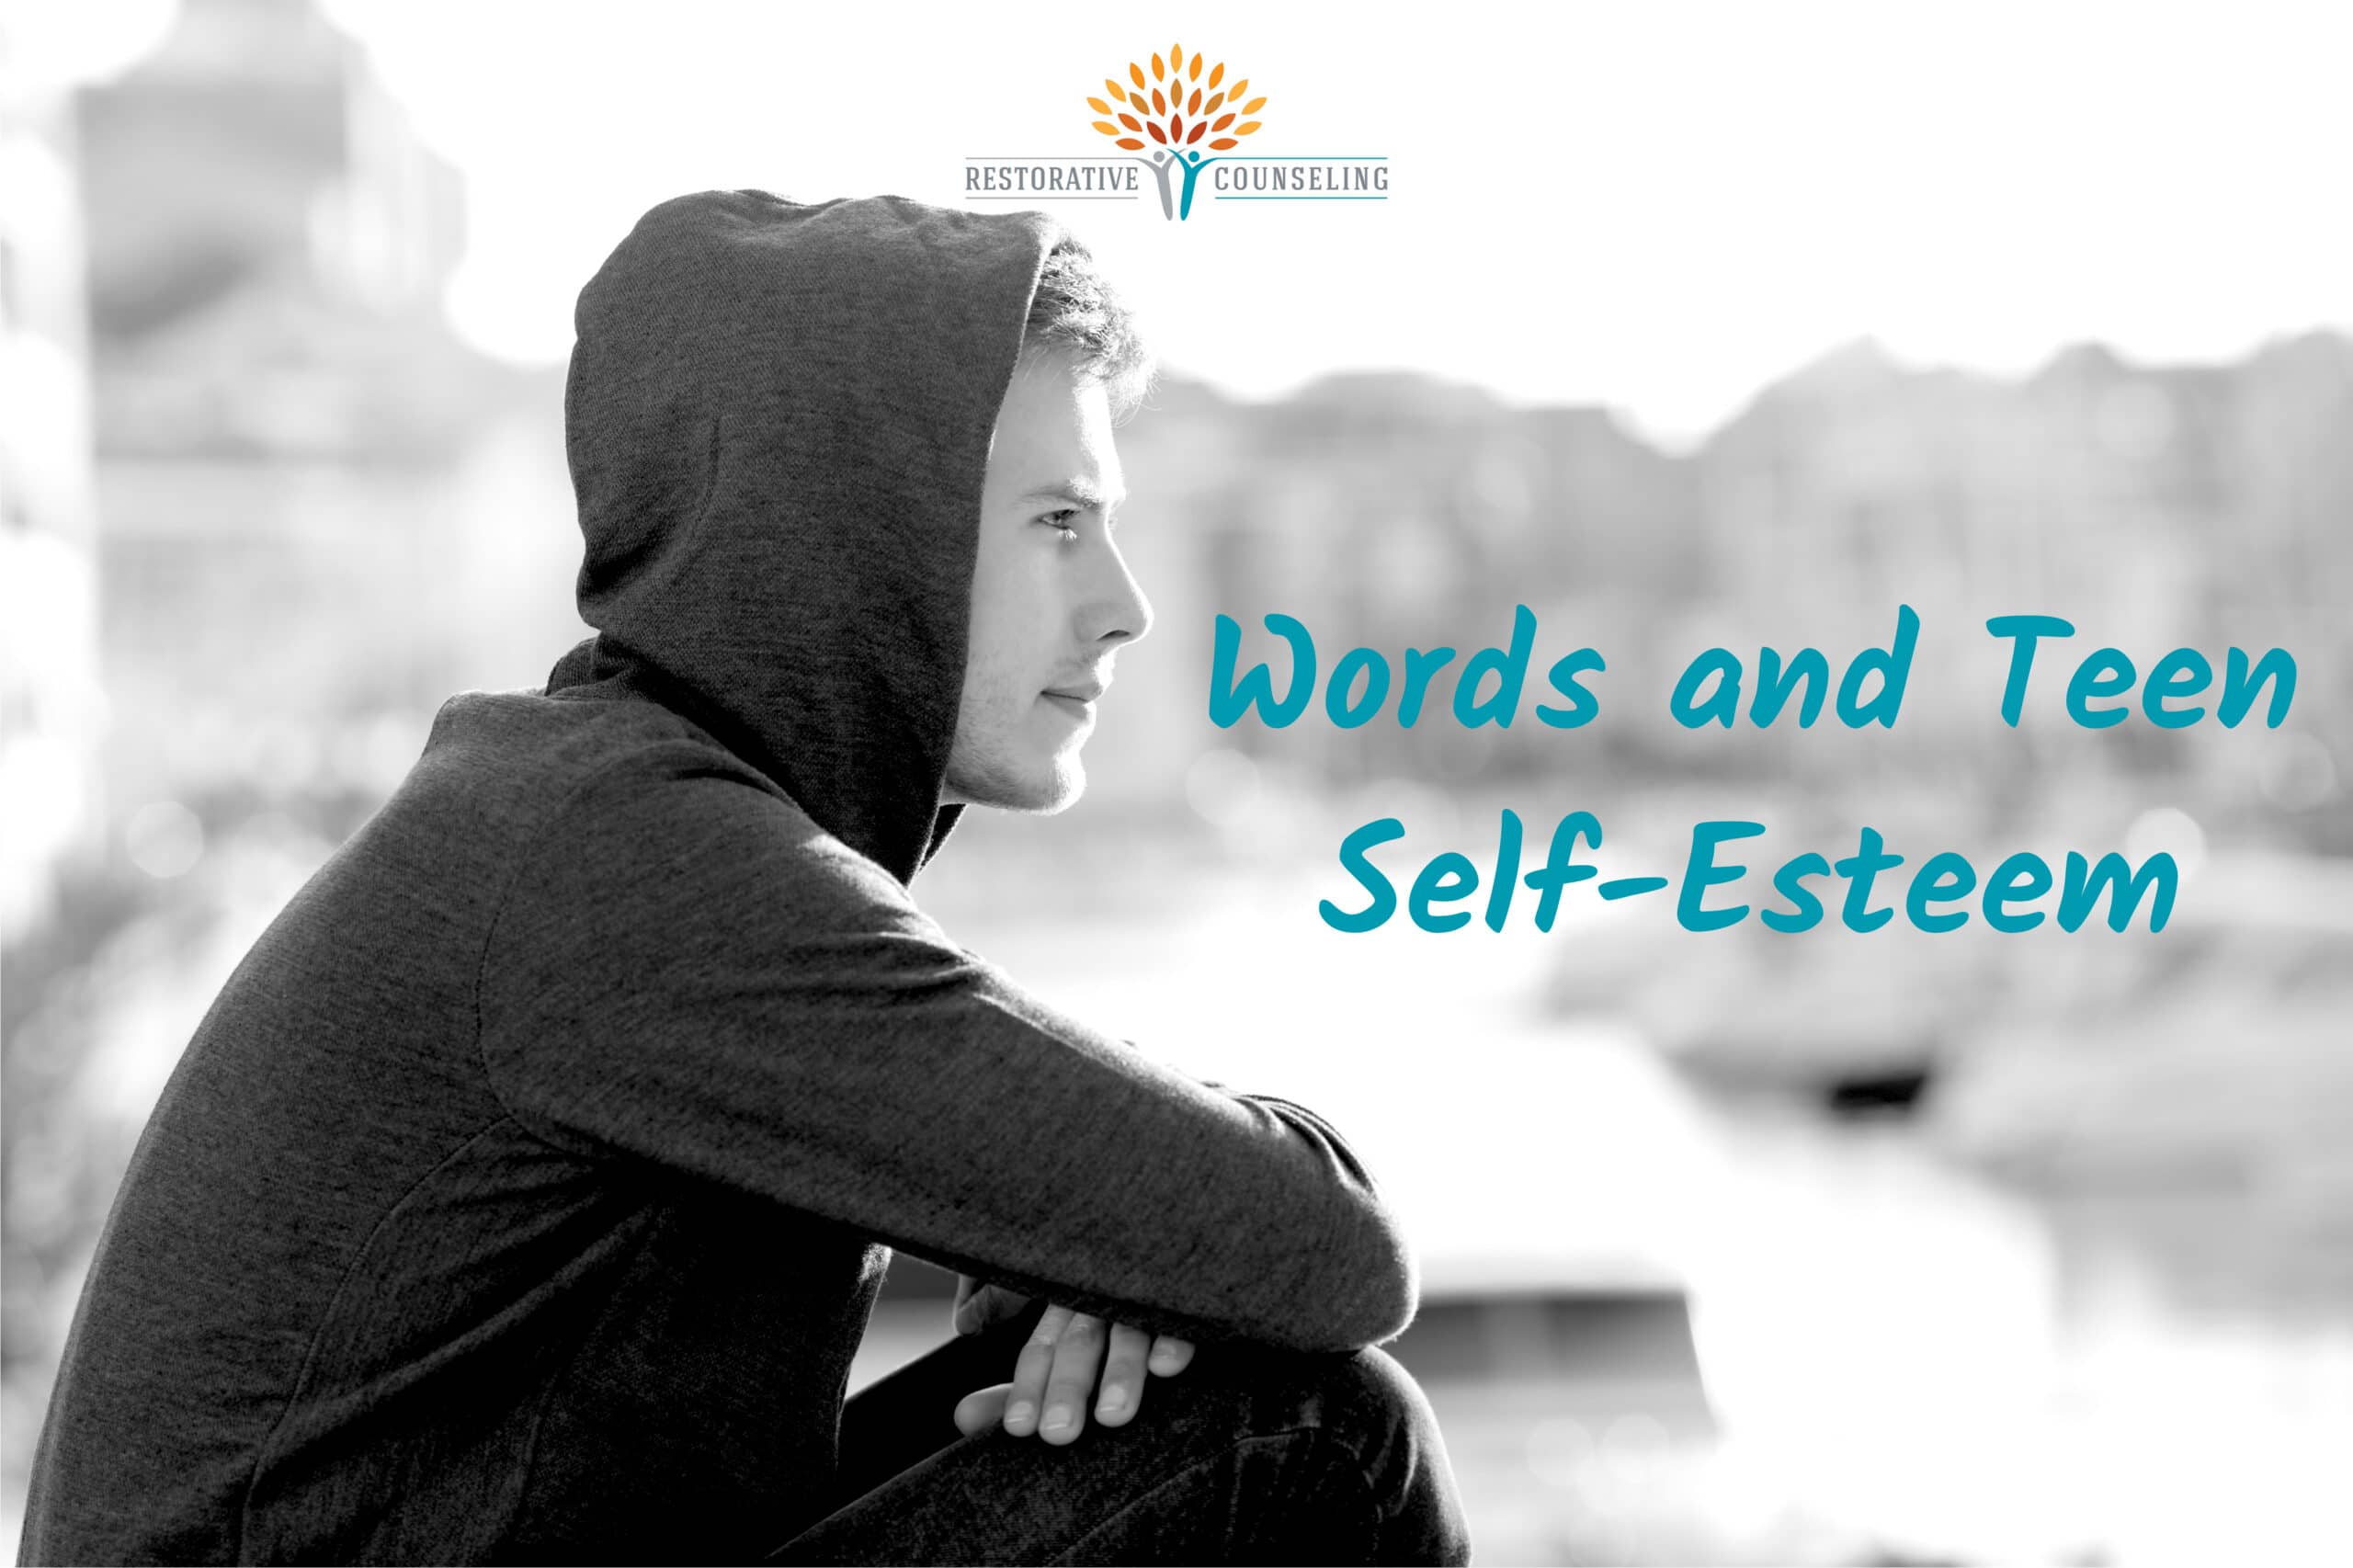 Words and Teen Self-Esteem